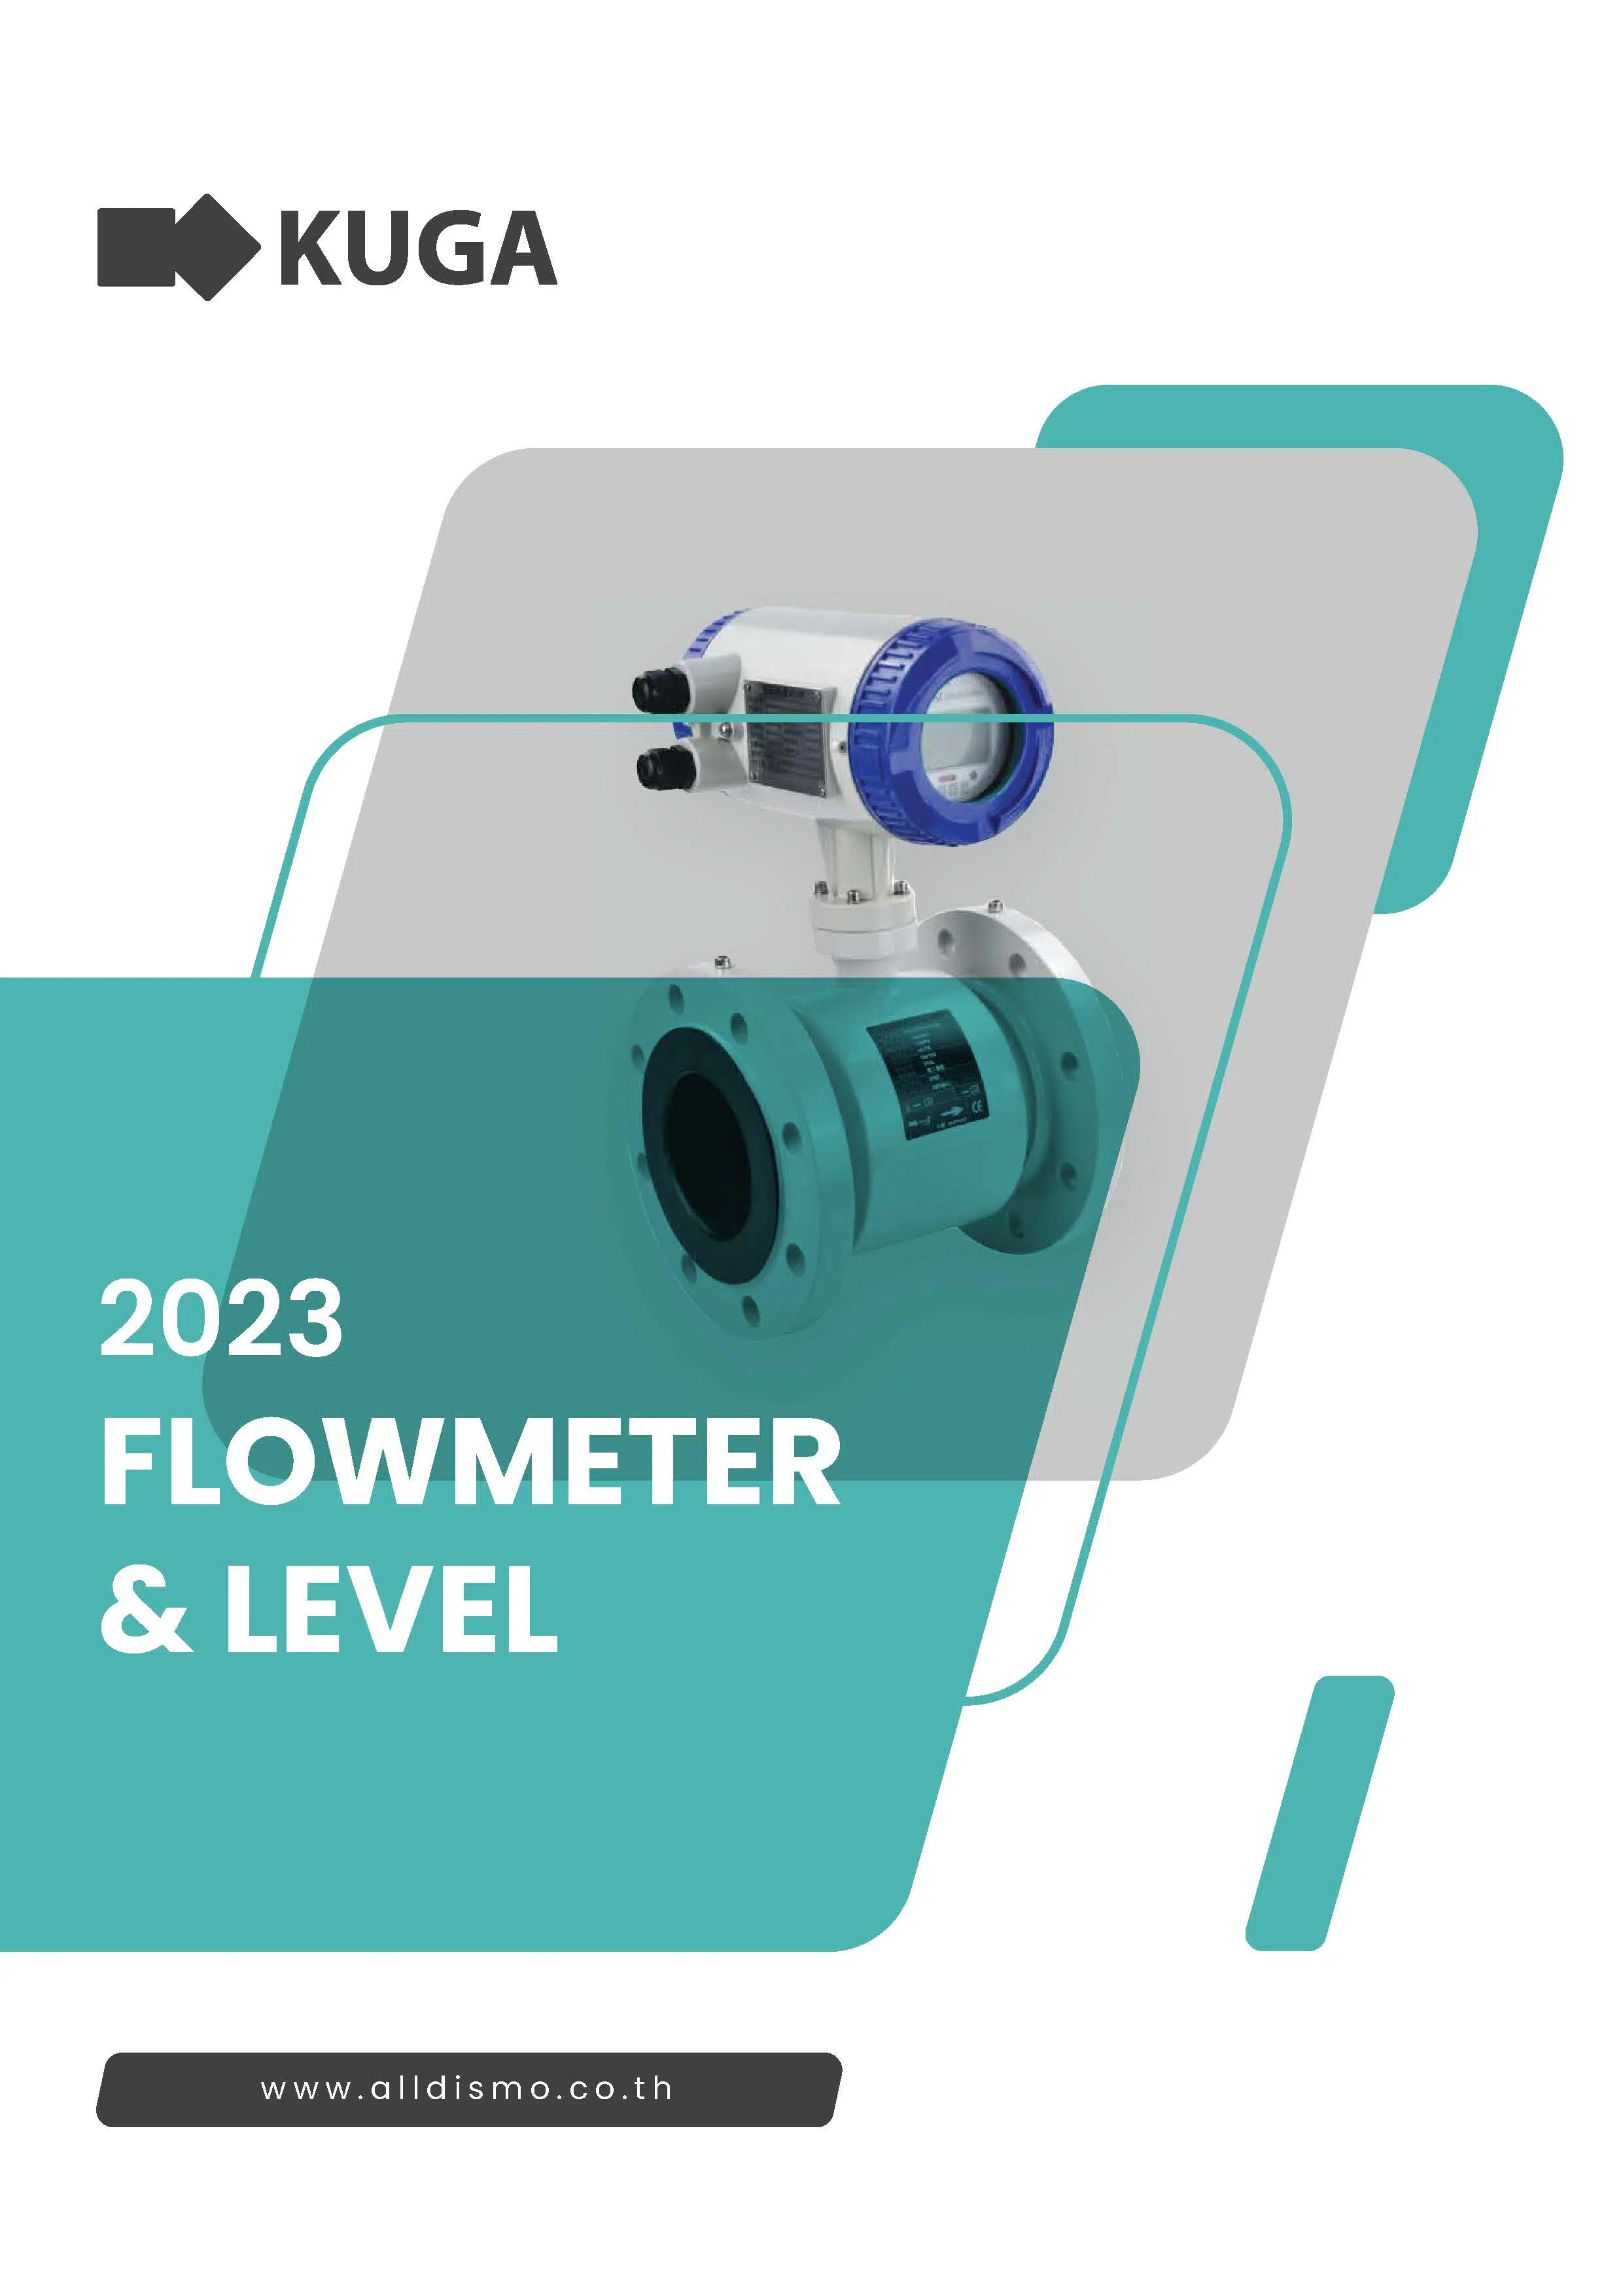 kuga flowmeter - alldismo co.,ltd.